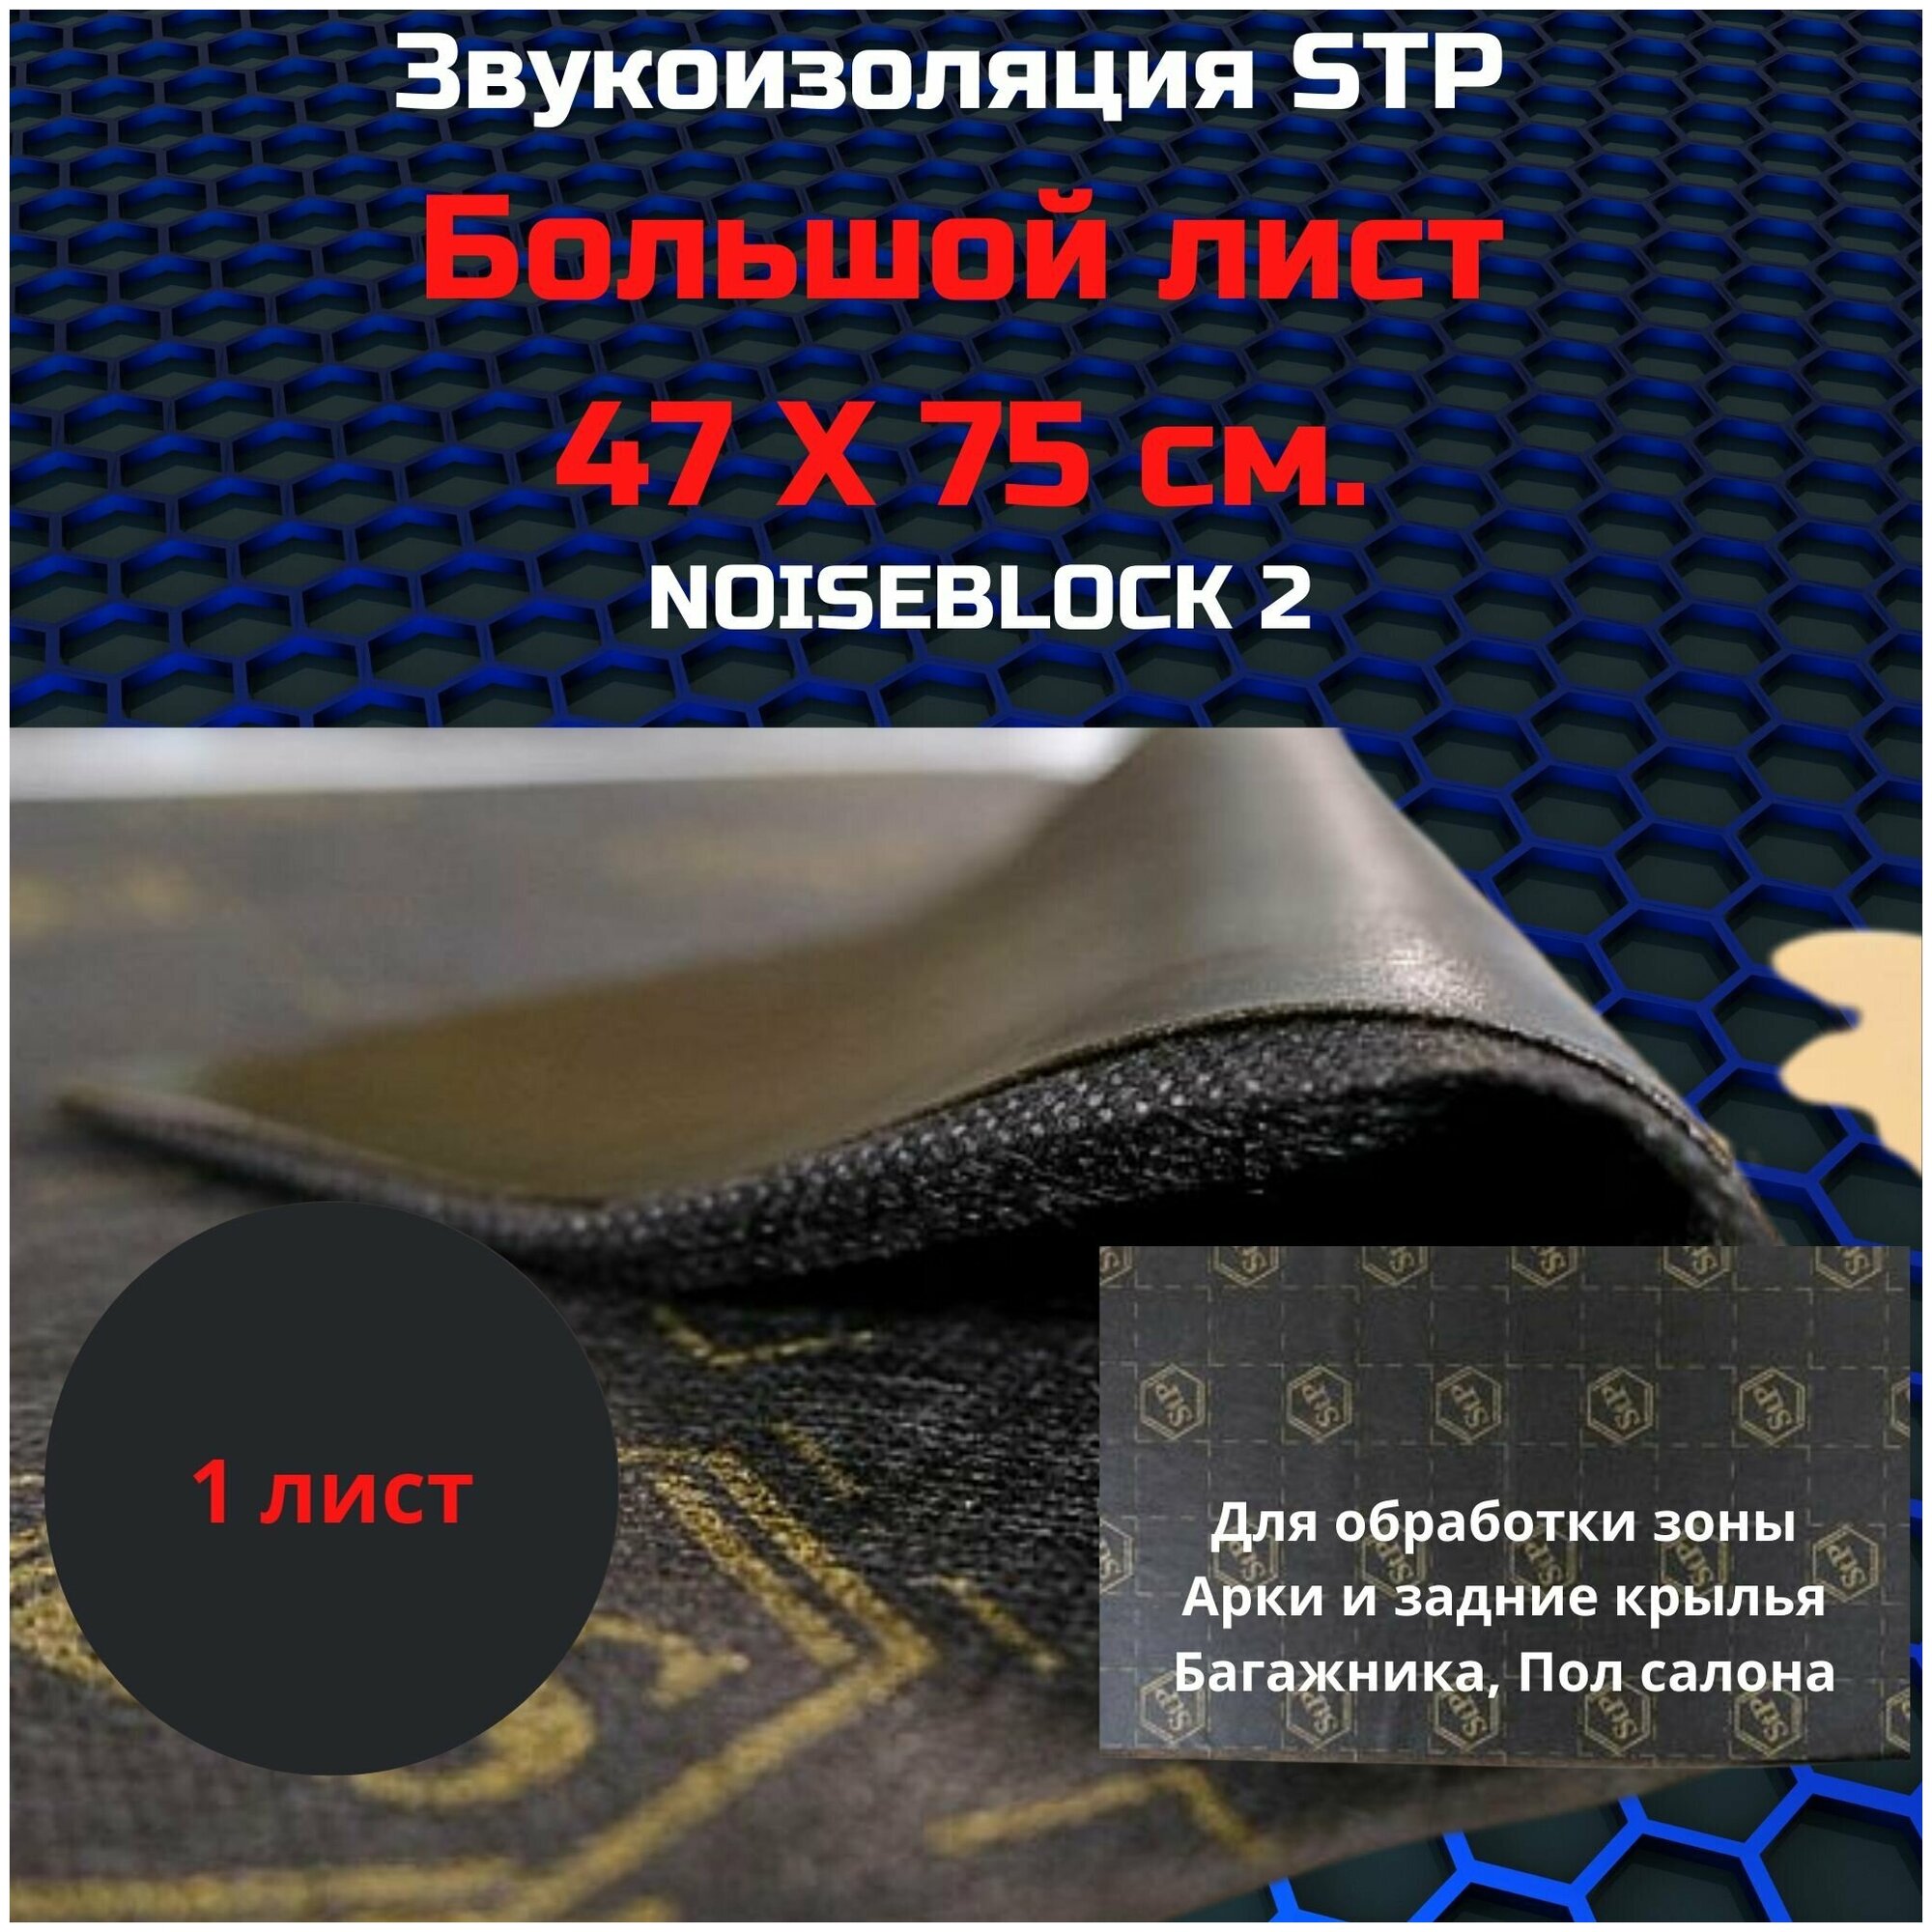 Шумоизоляция STP NoiseBlock 2/Звукоизоляция СТП нойс блок 2 (0,75x0,47м) толщина 2мм (1 лист)